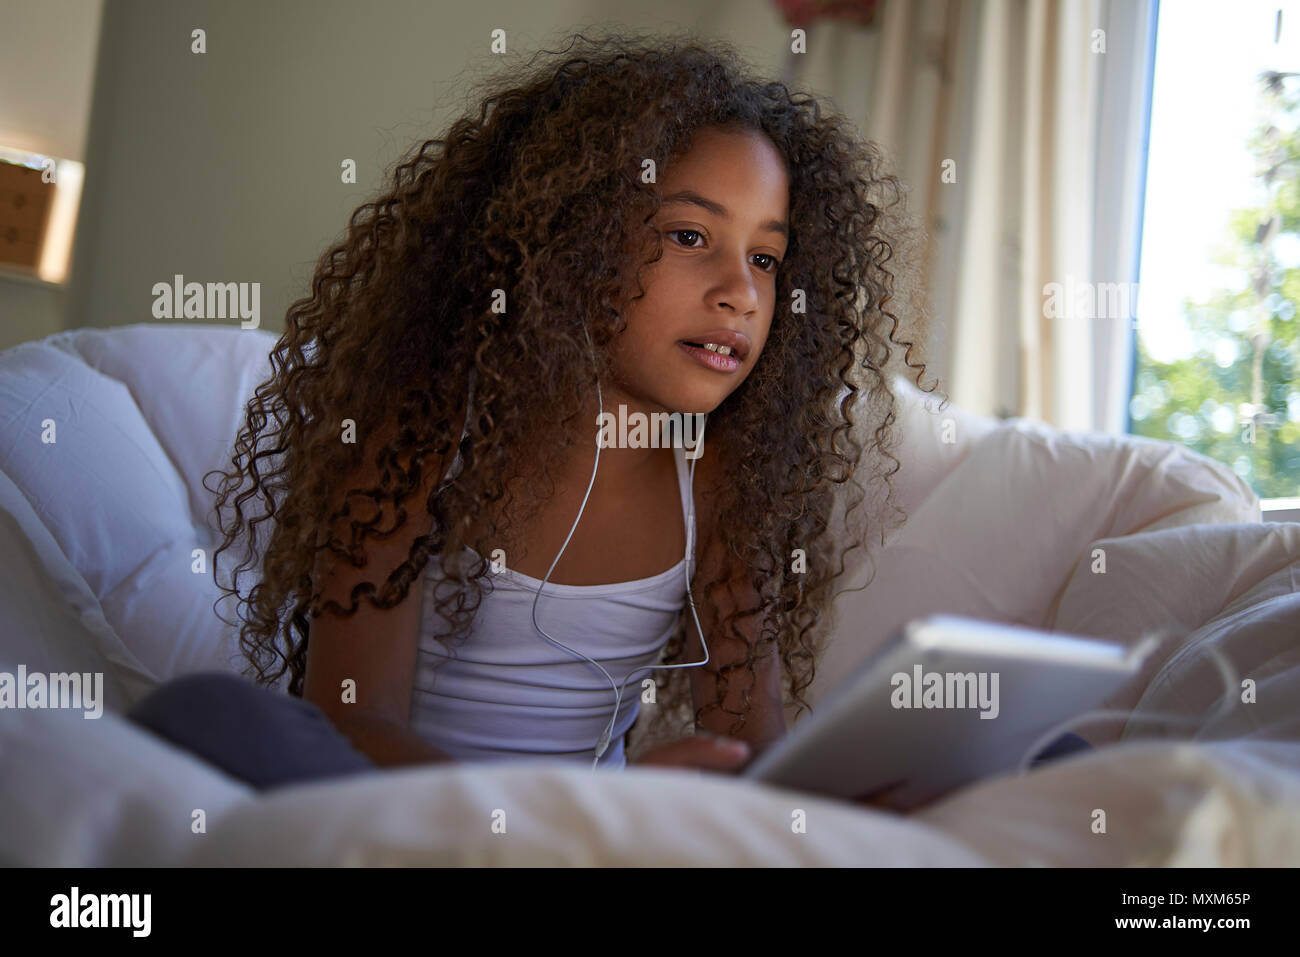 Portrait einer jungen Jugendlichen Mixed Race Mädchen mit grossen lockiges  Haar an Kamera suchen Stockfotografie - Alamy